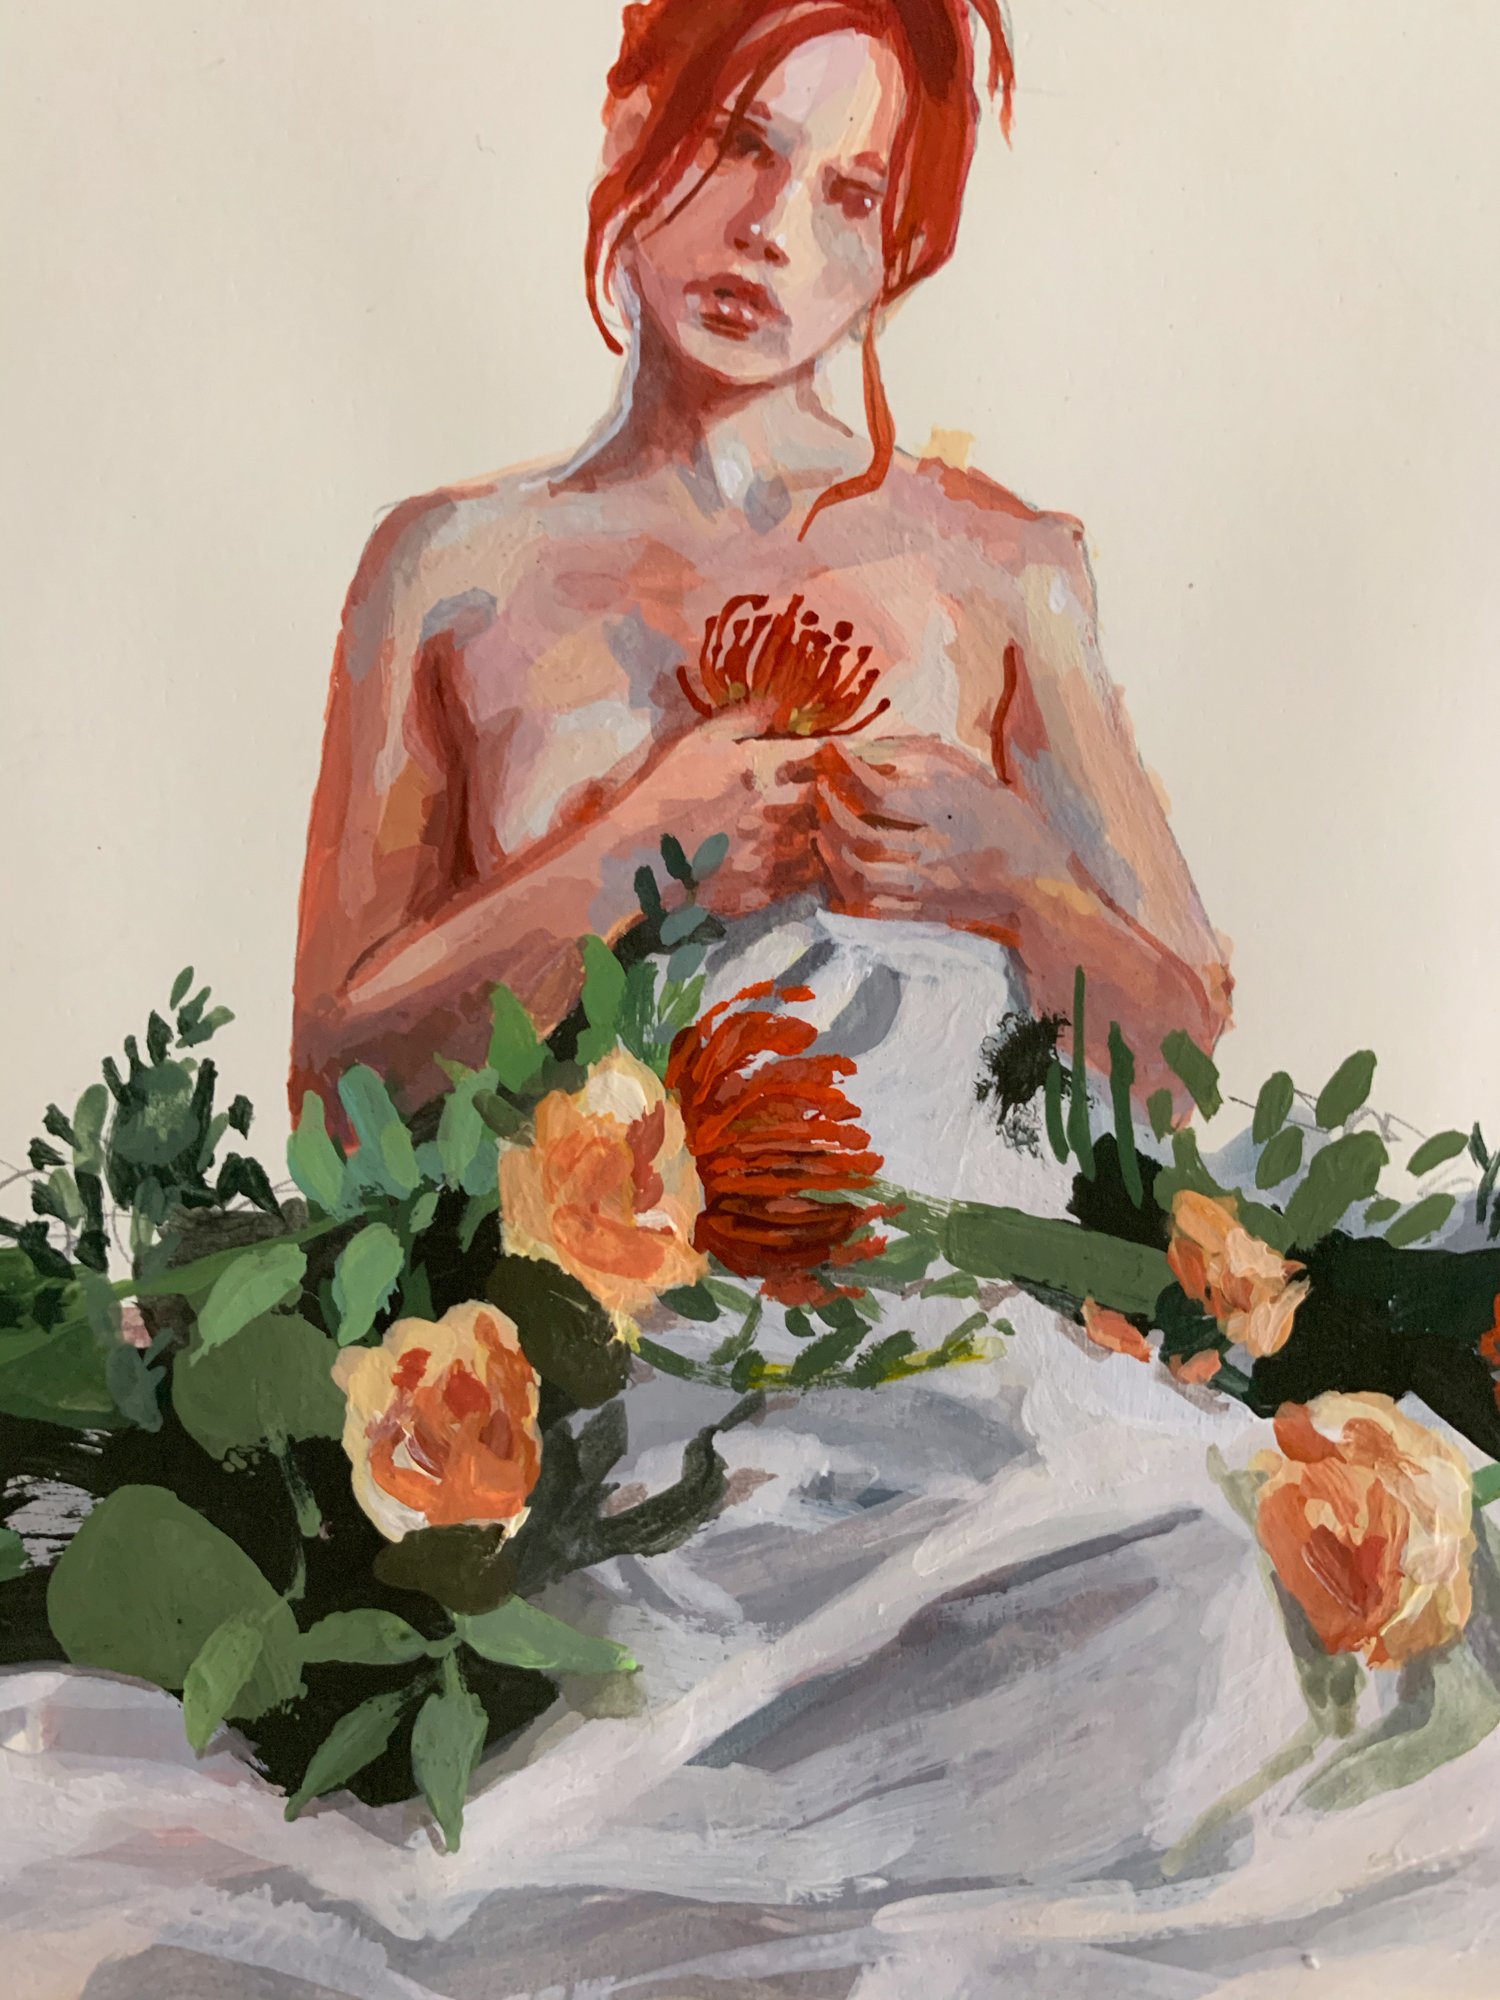 Agnes-Cecile bouquet dress study (21x13 cm)